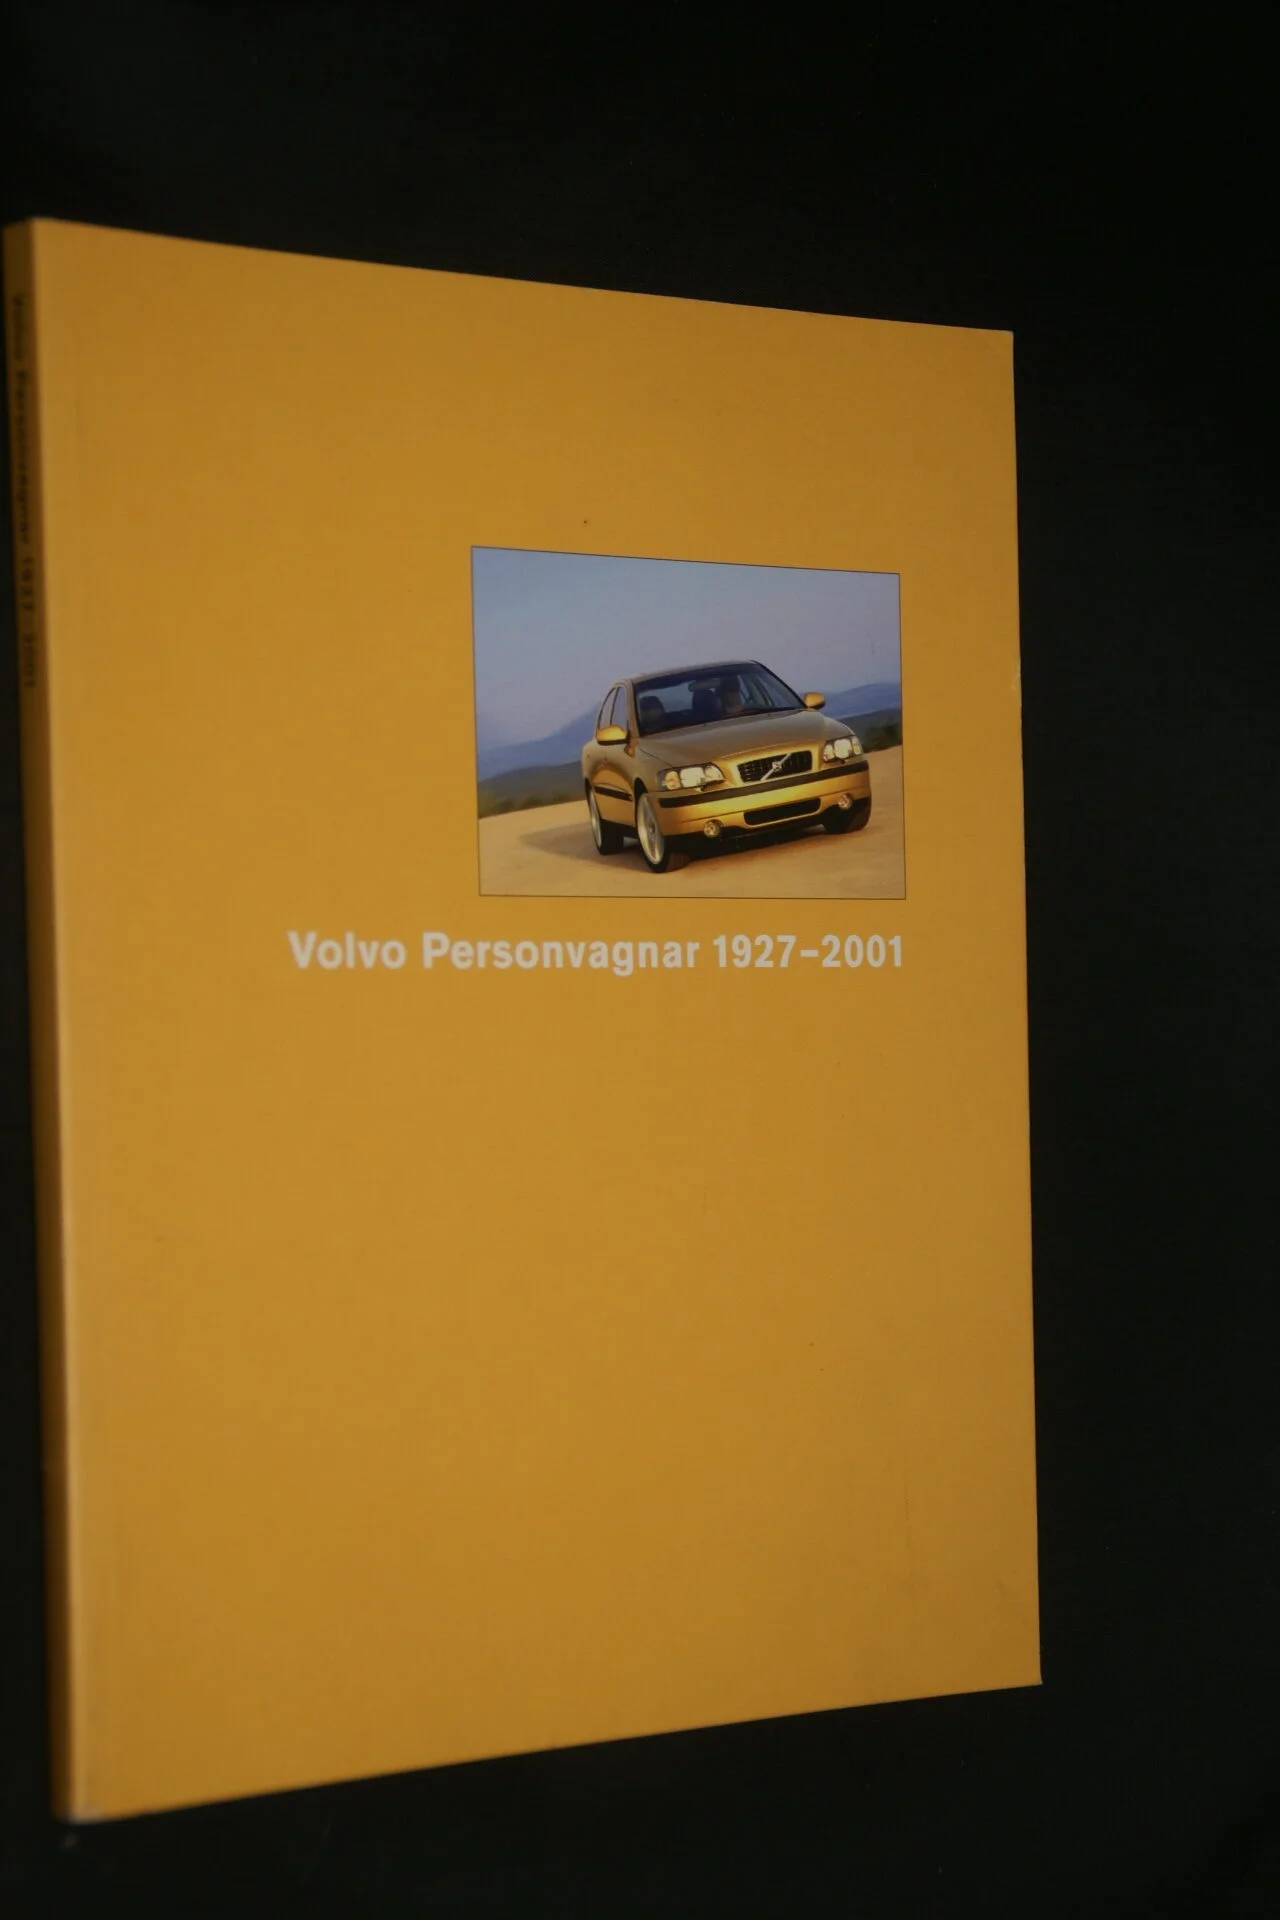 DSC01252 boek Volvo cars ISSN 1927-2001 1104-9928